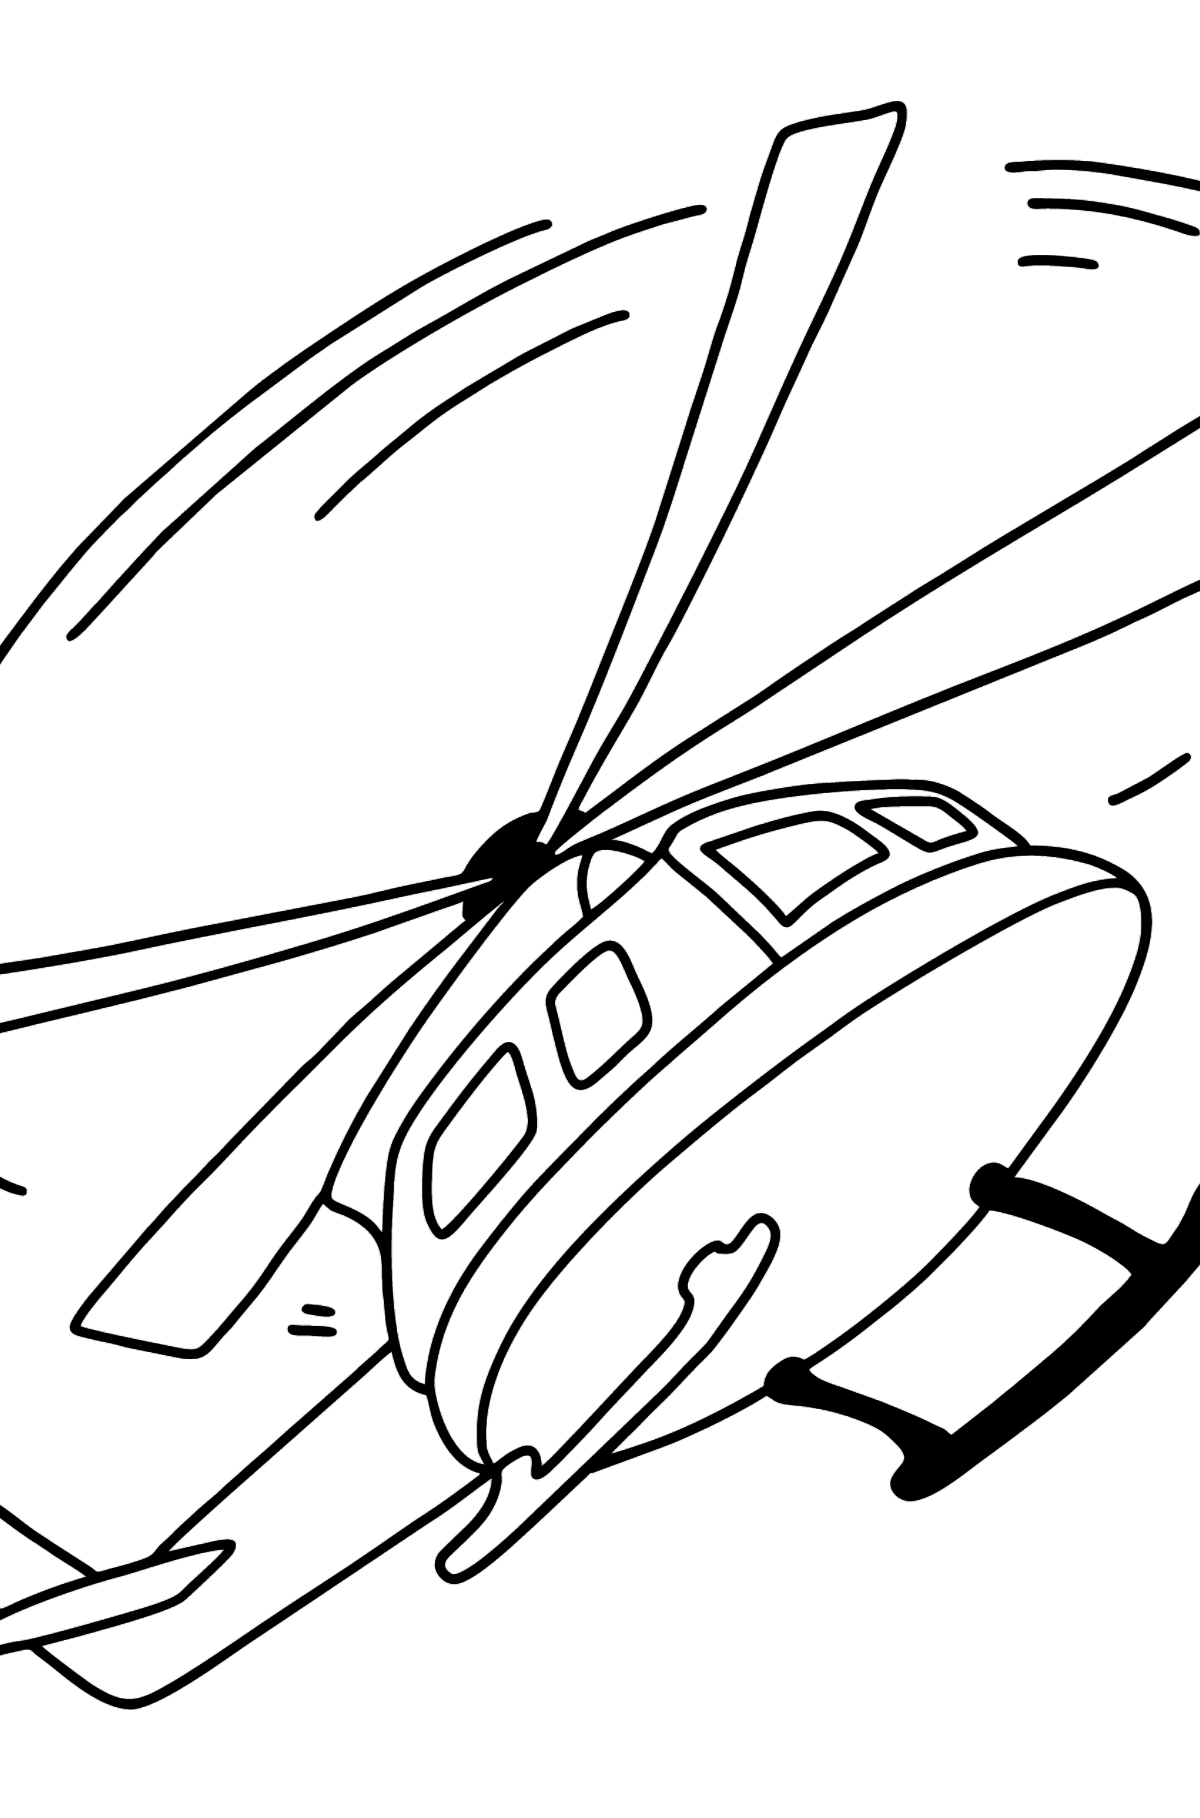 Desenho de helicóptero para colorir online - Imagens para Colorir para Crianças